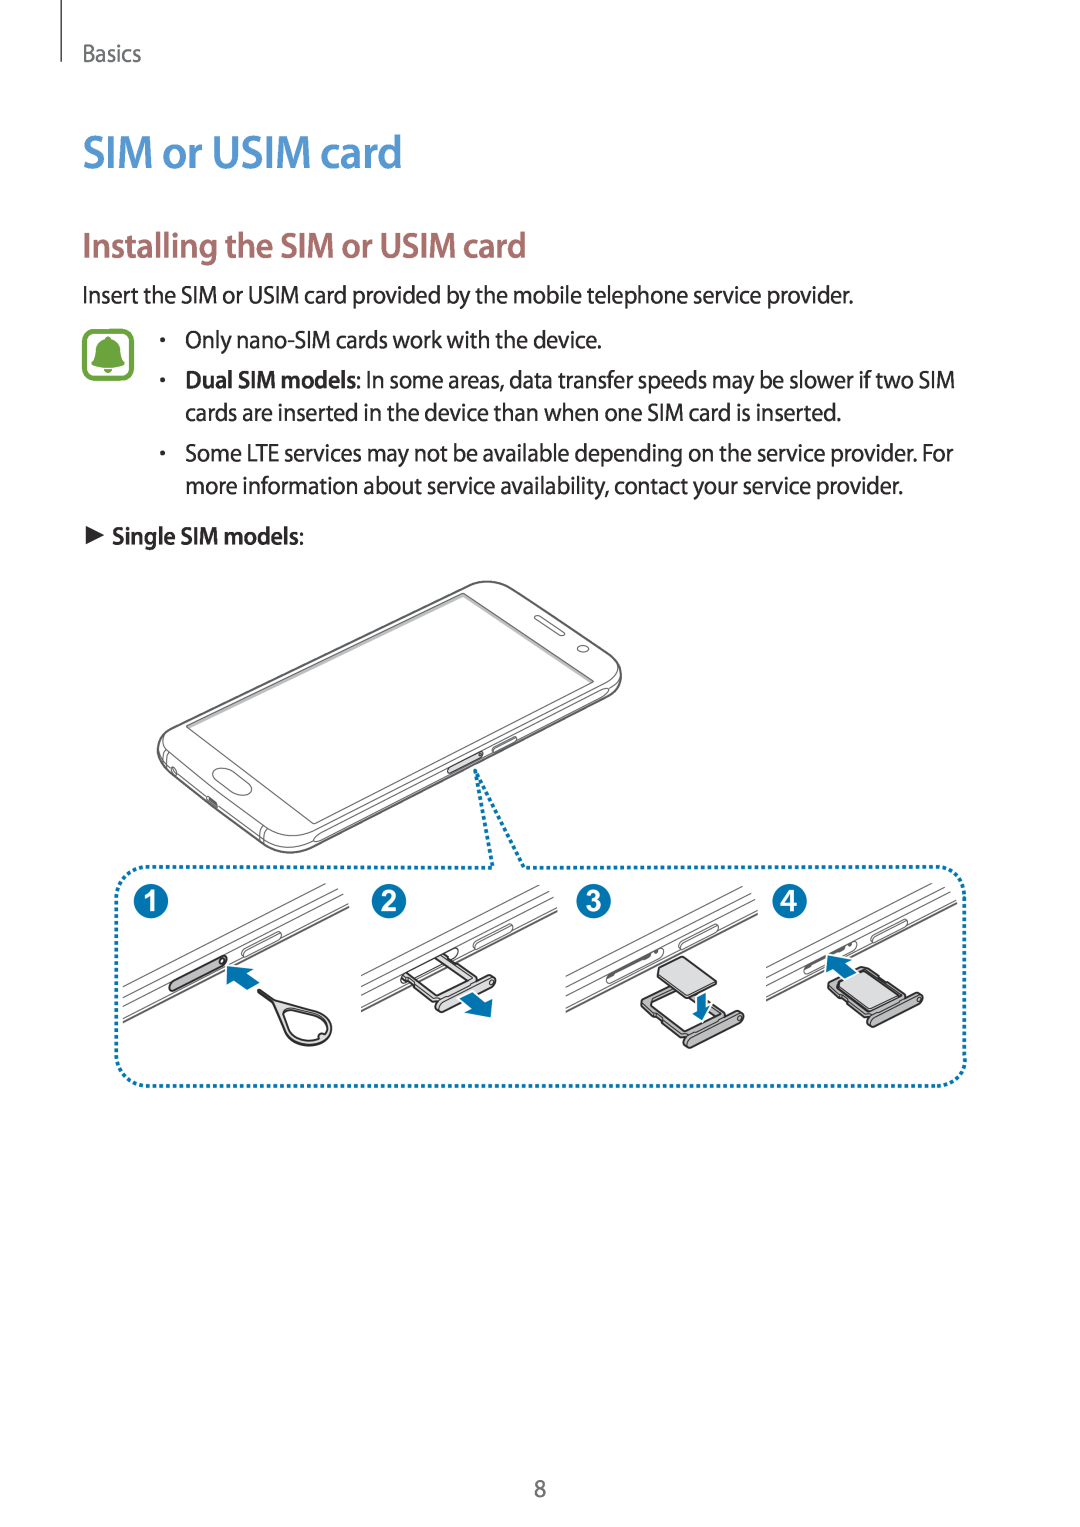 Samsung SM-G920FZWAXEF, SM-G920FZKFDBT, SM-G920FZKEDBT manual Installing the SIM or USIM card, Single SIM models, Basics 